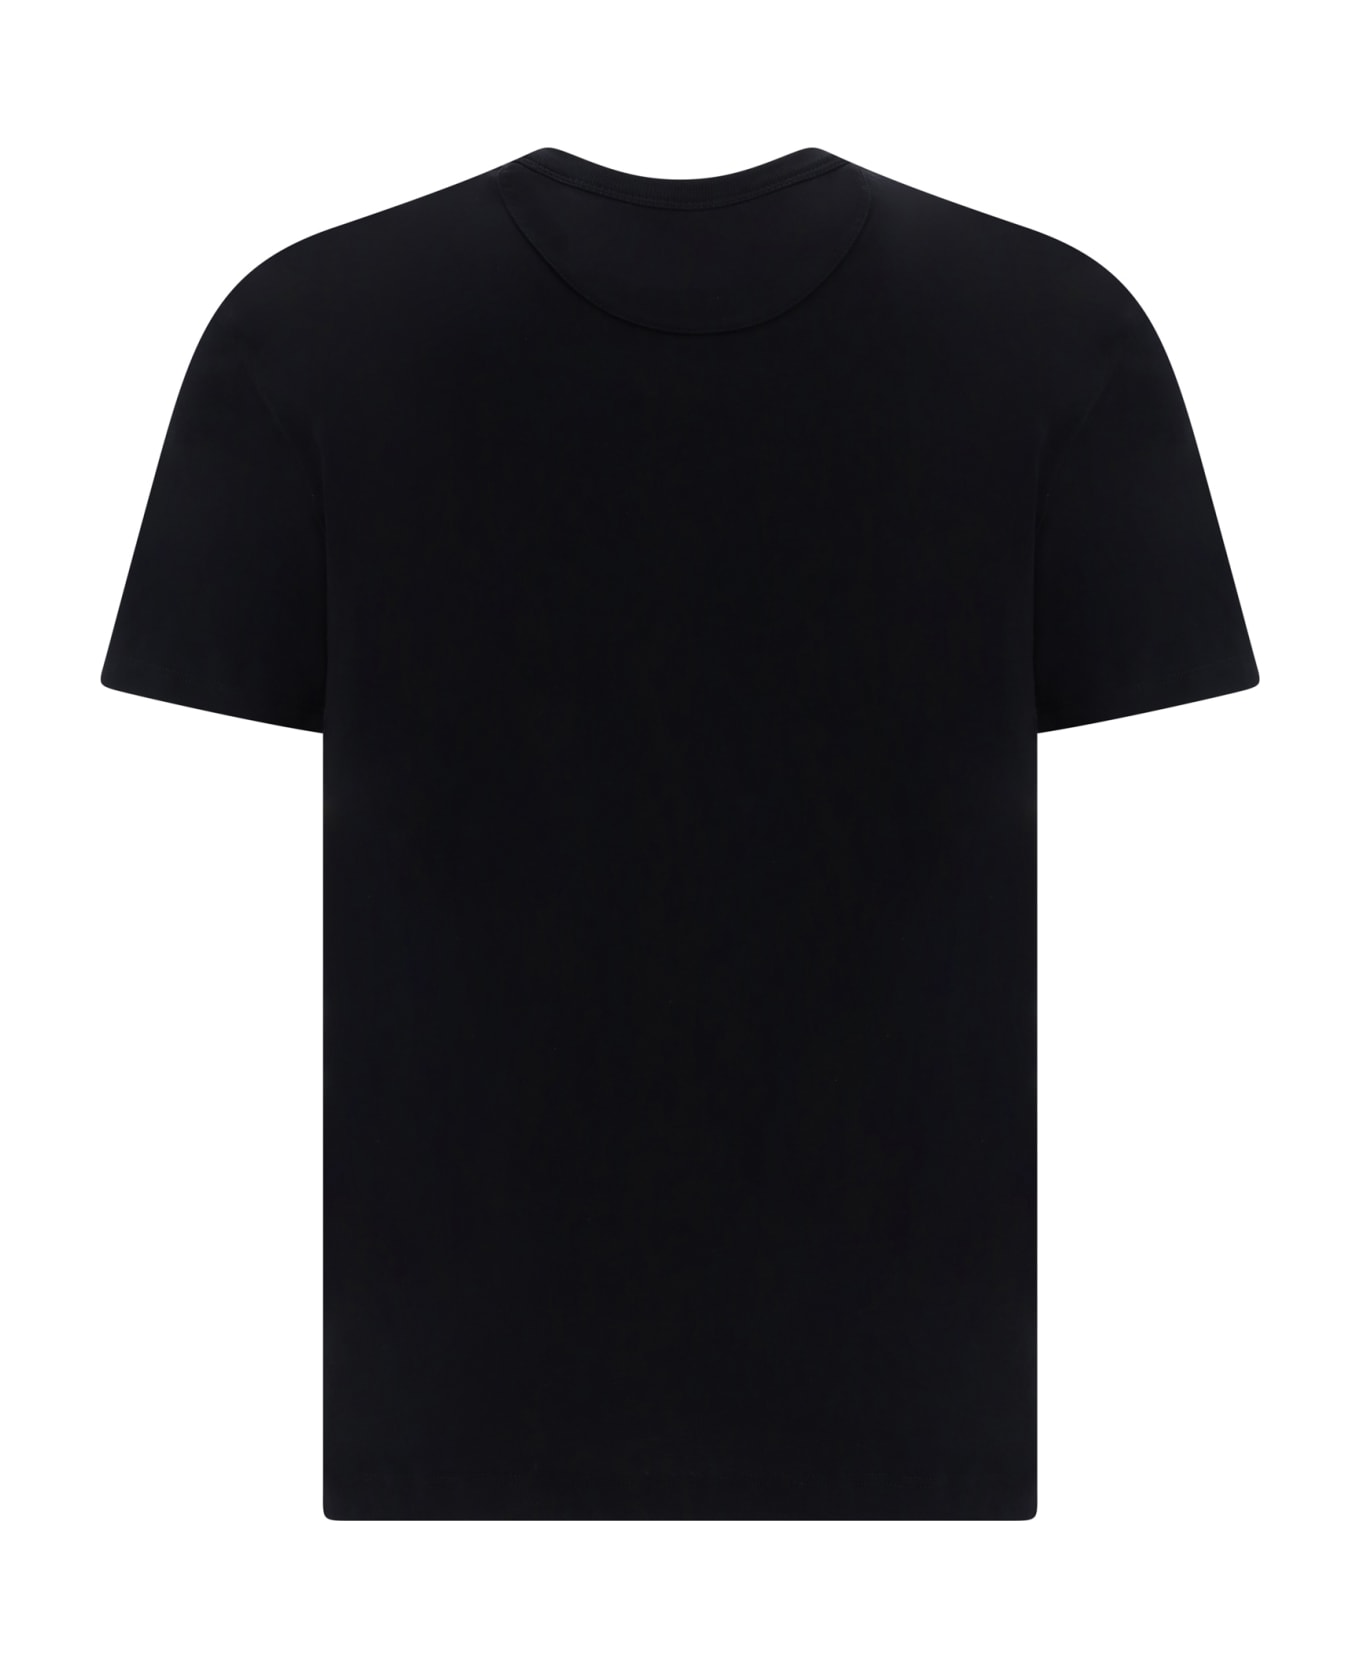 Valentino T-shirt - Black シャツ